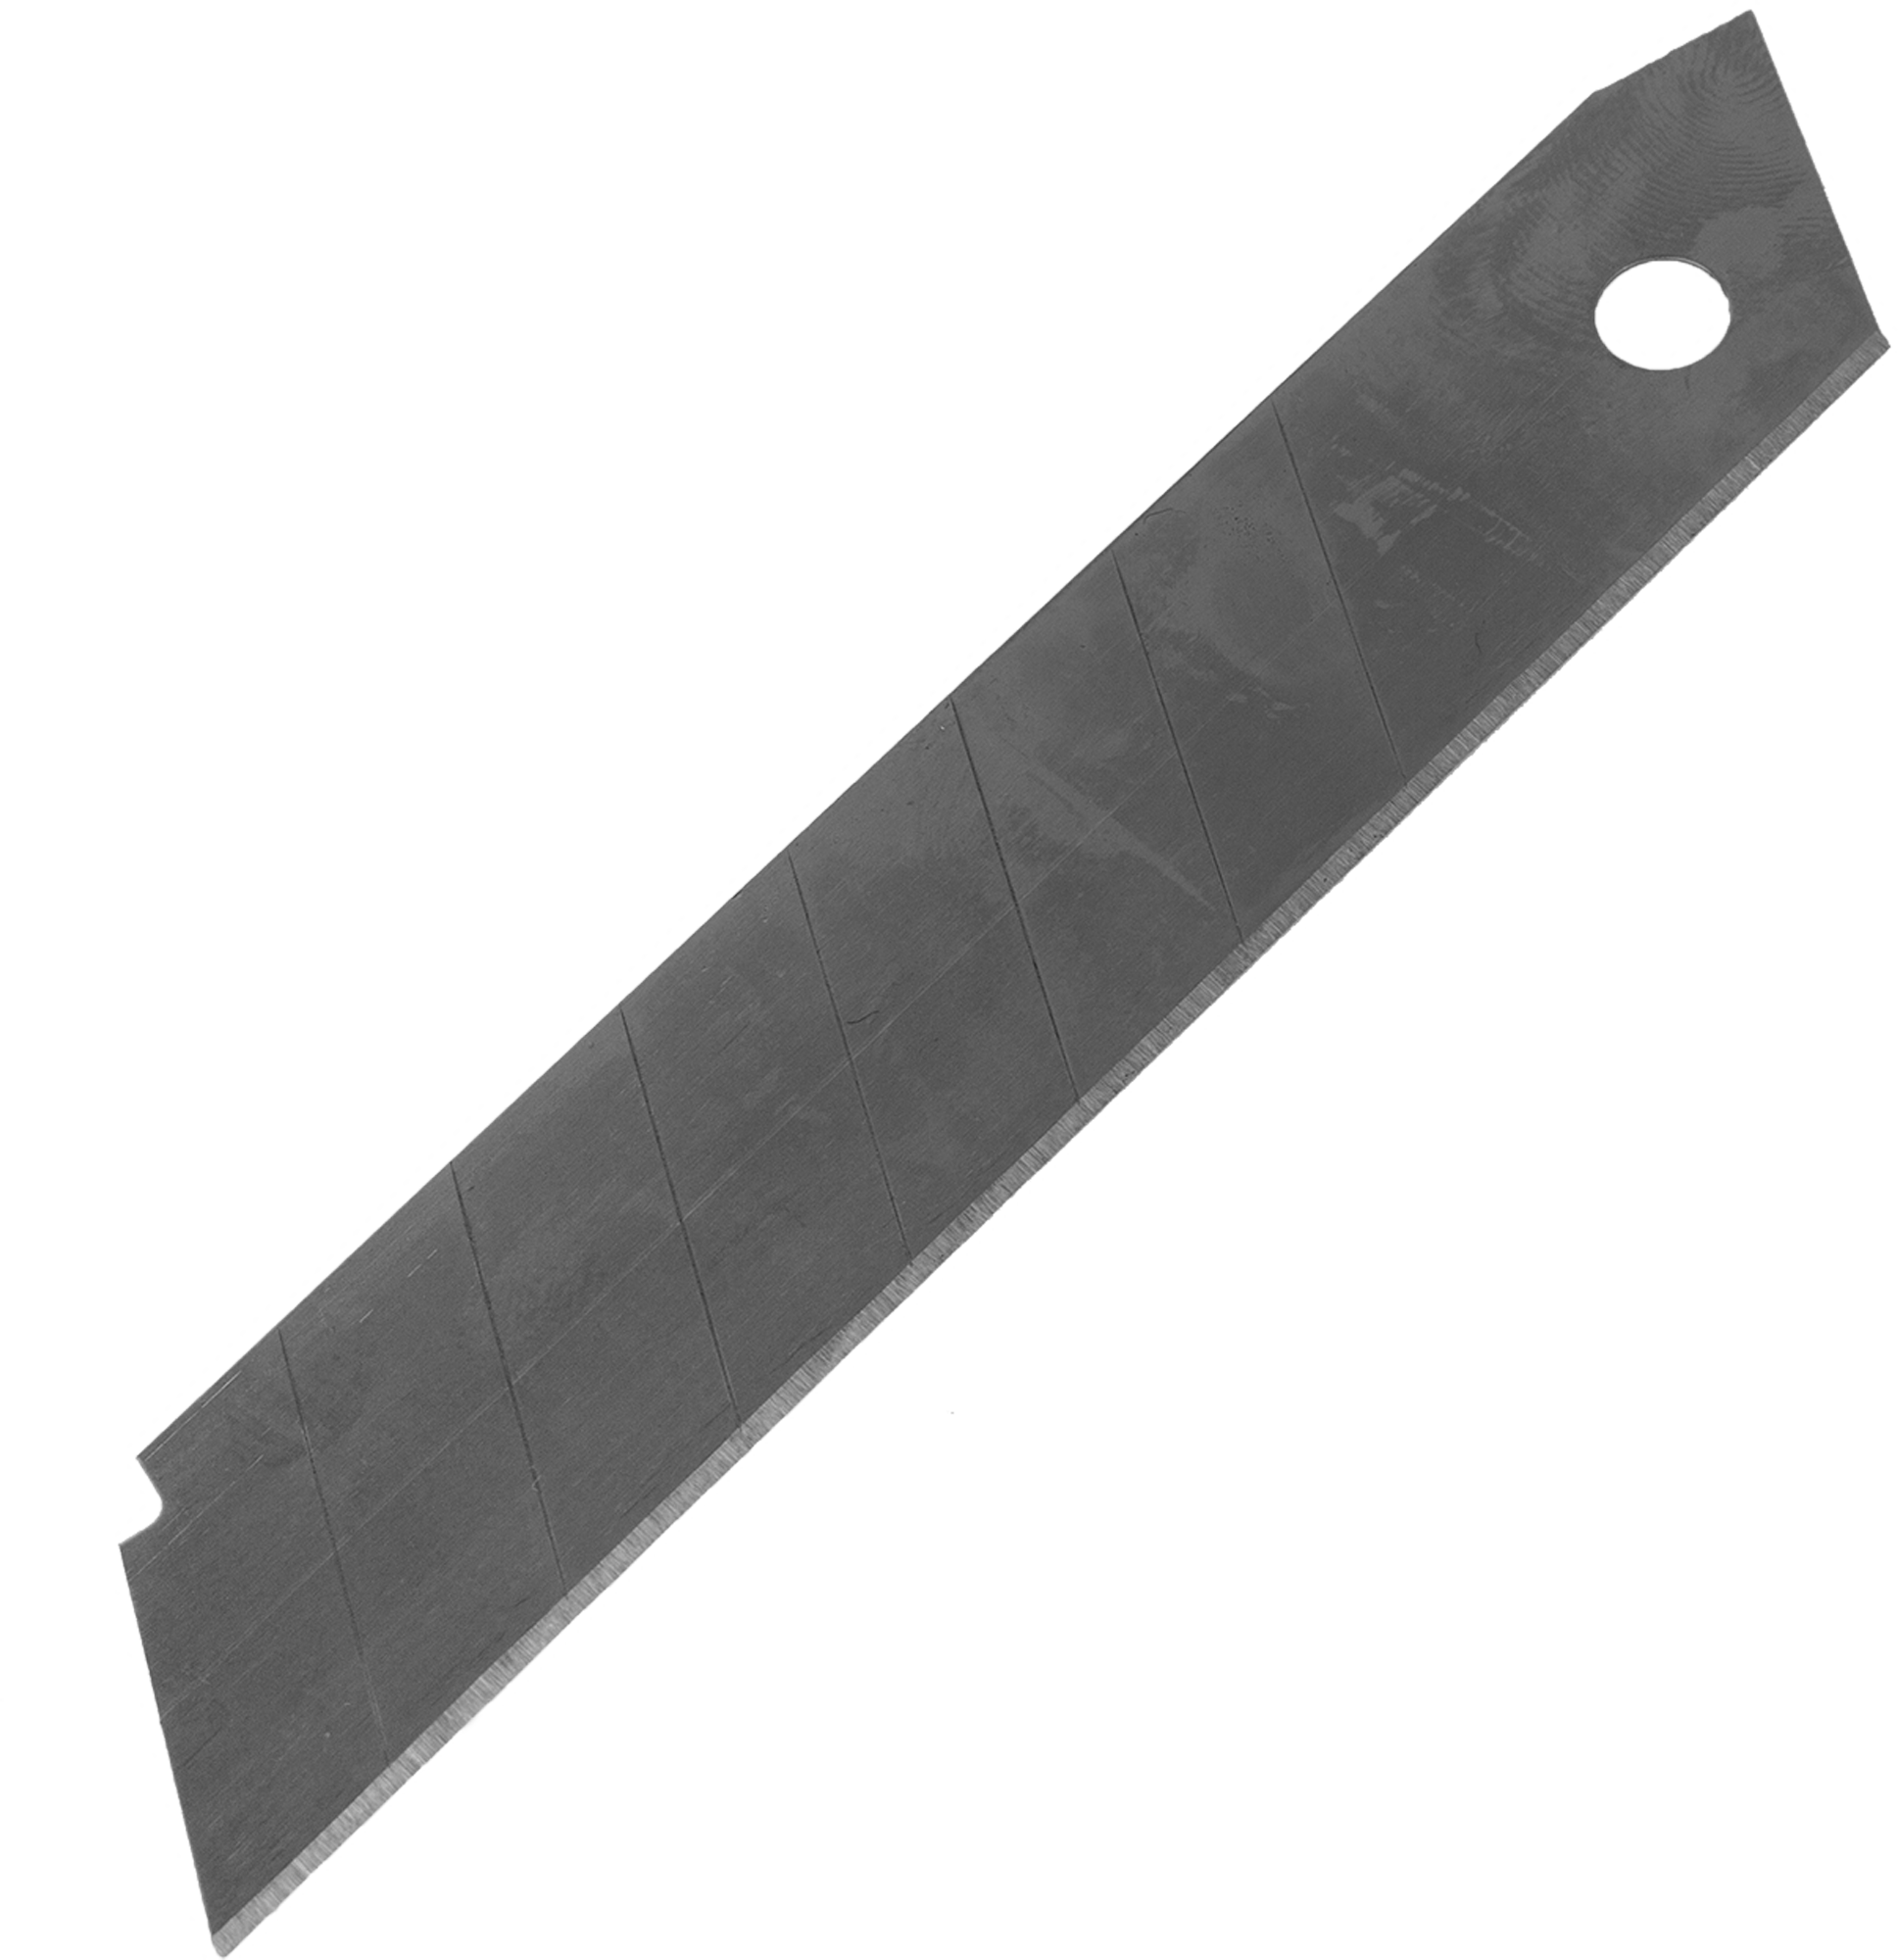 Лезвие для ножа 18мм, 10шт Sparta. Лезвия для ножа Systec 18 мм, 10 шт. Лезвие Sparta 18 мм. Лезвия для ножа 18 мм Sparta. Лезвие 18 мм 10 шт